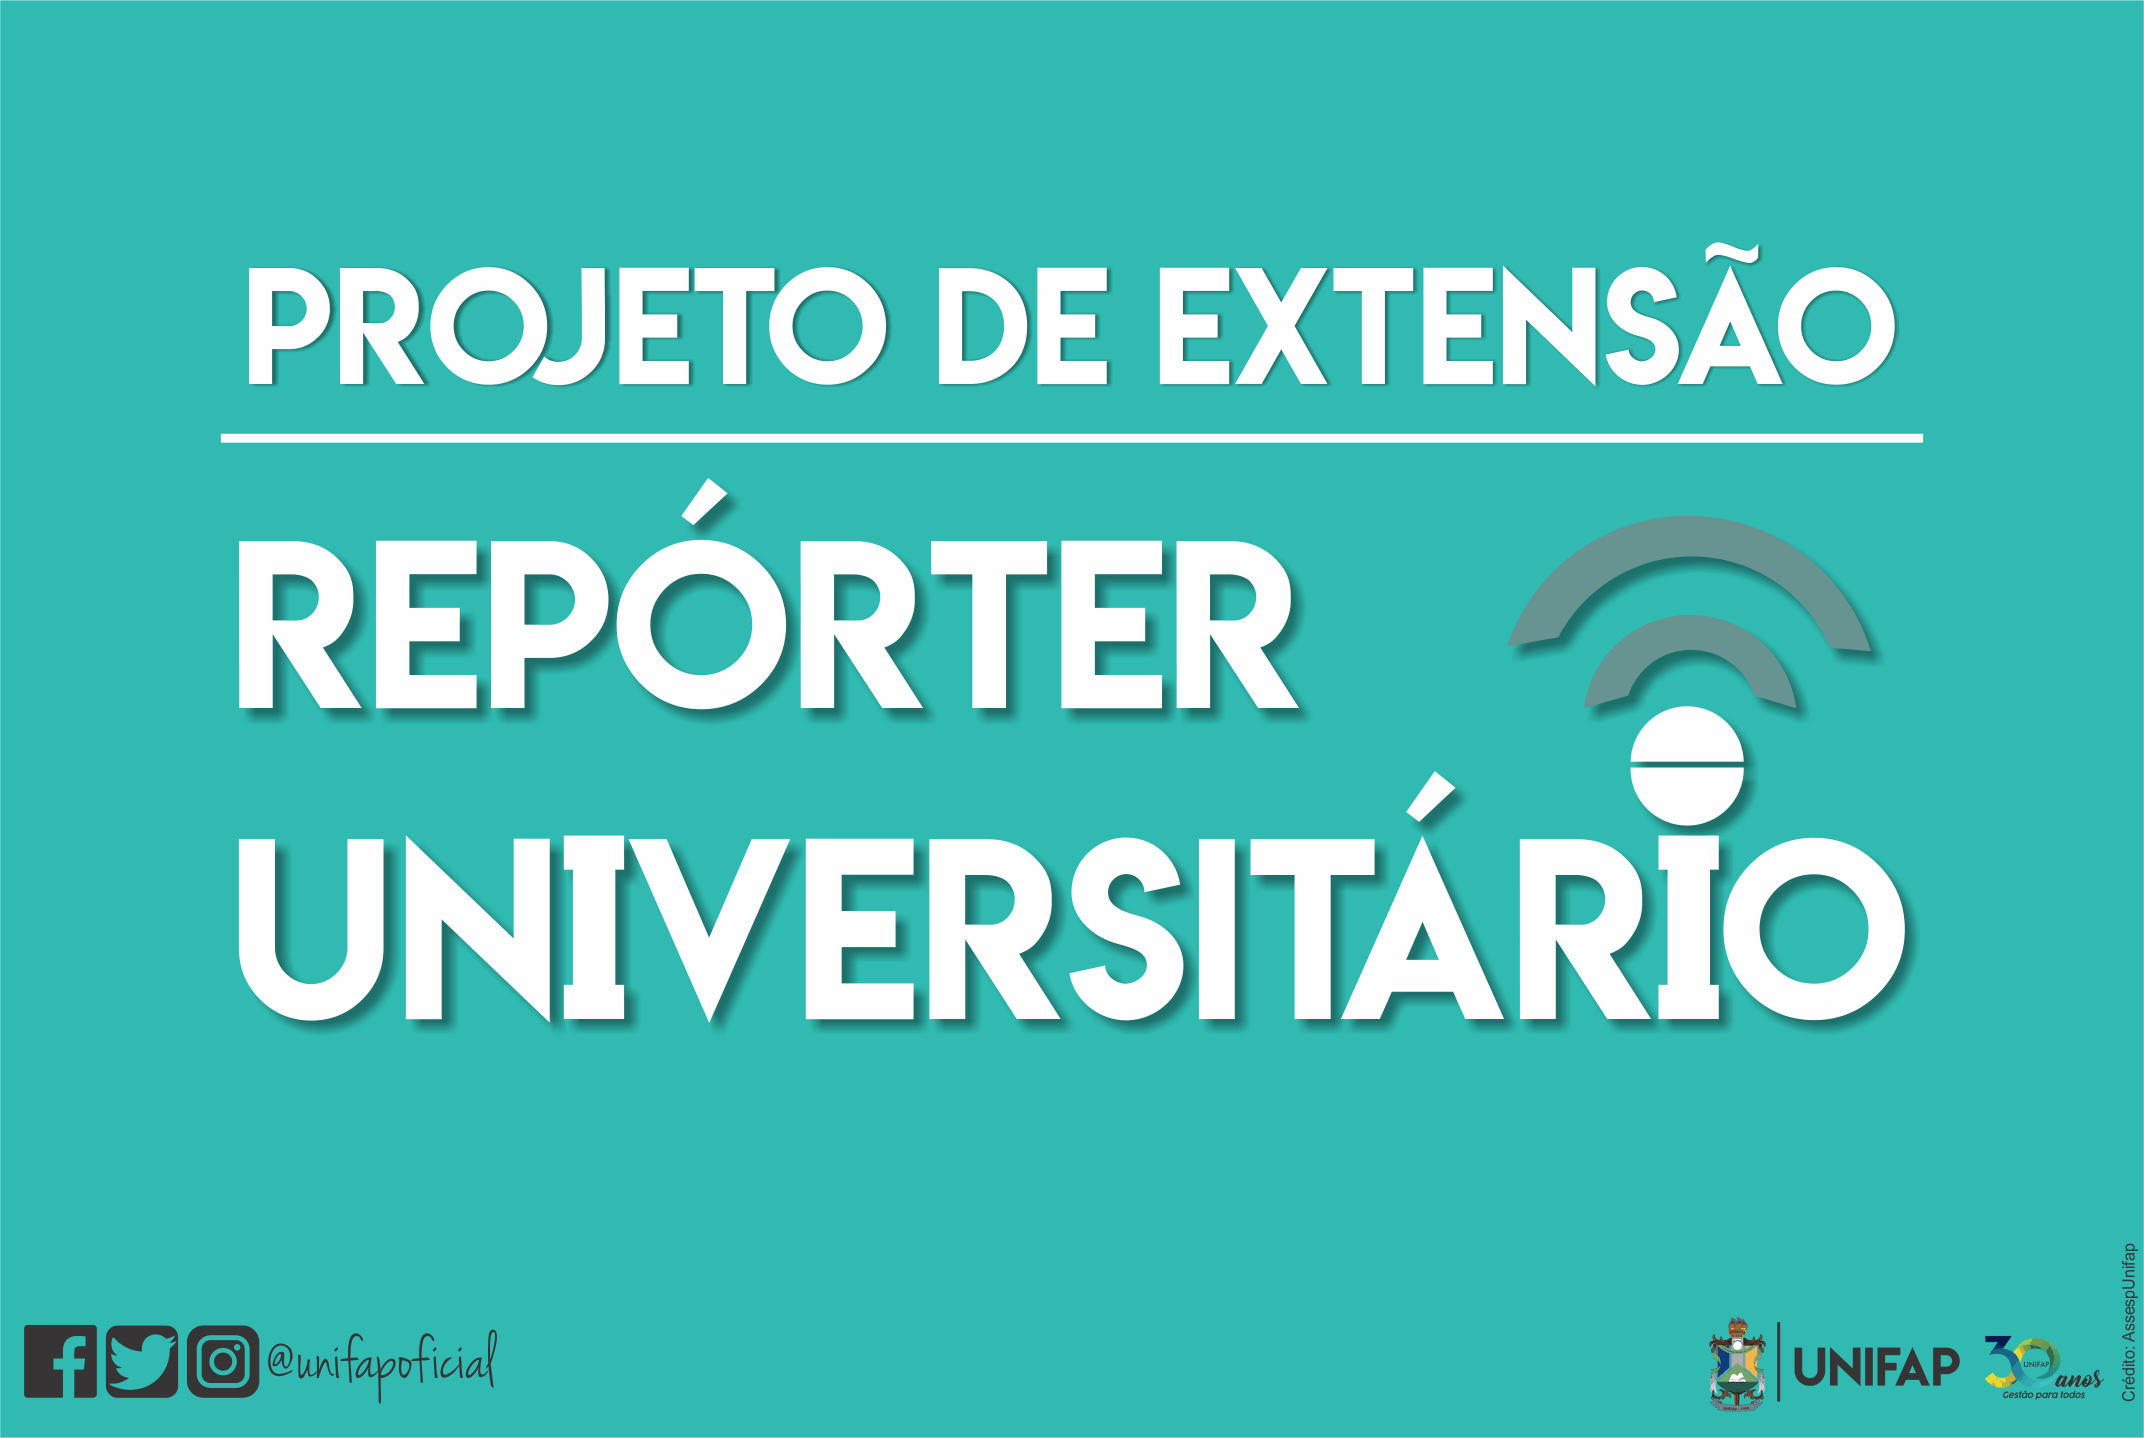 Começaram as inscrições para o estágio voluntário no Projeto de Extensão Repórter Universitário Tv Web do curso de Jornalismo